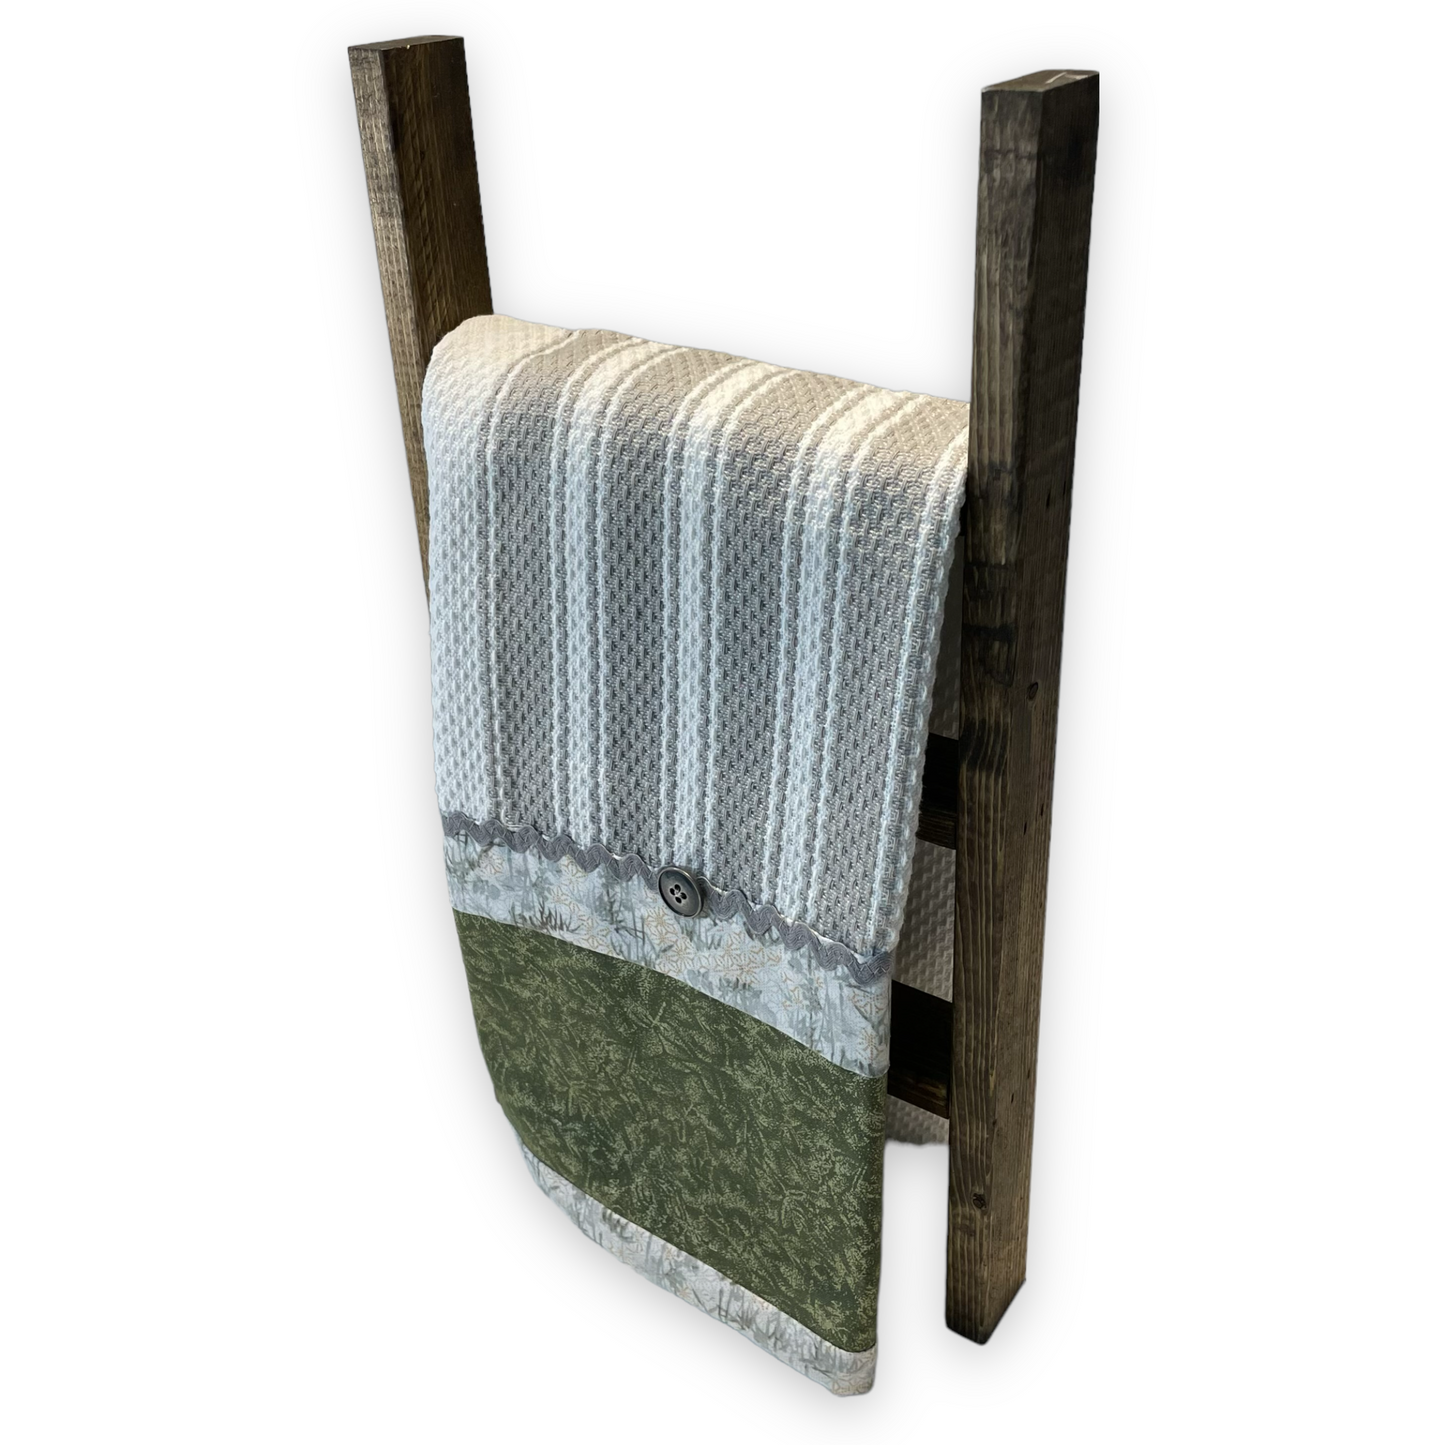 Farmhouse Tea Towel Canada, Farmhouse Dish Towel - Home Stitchery Decor